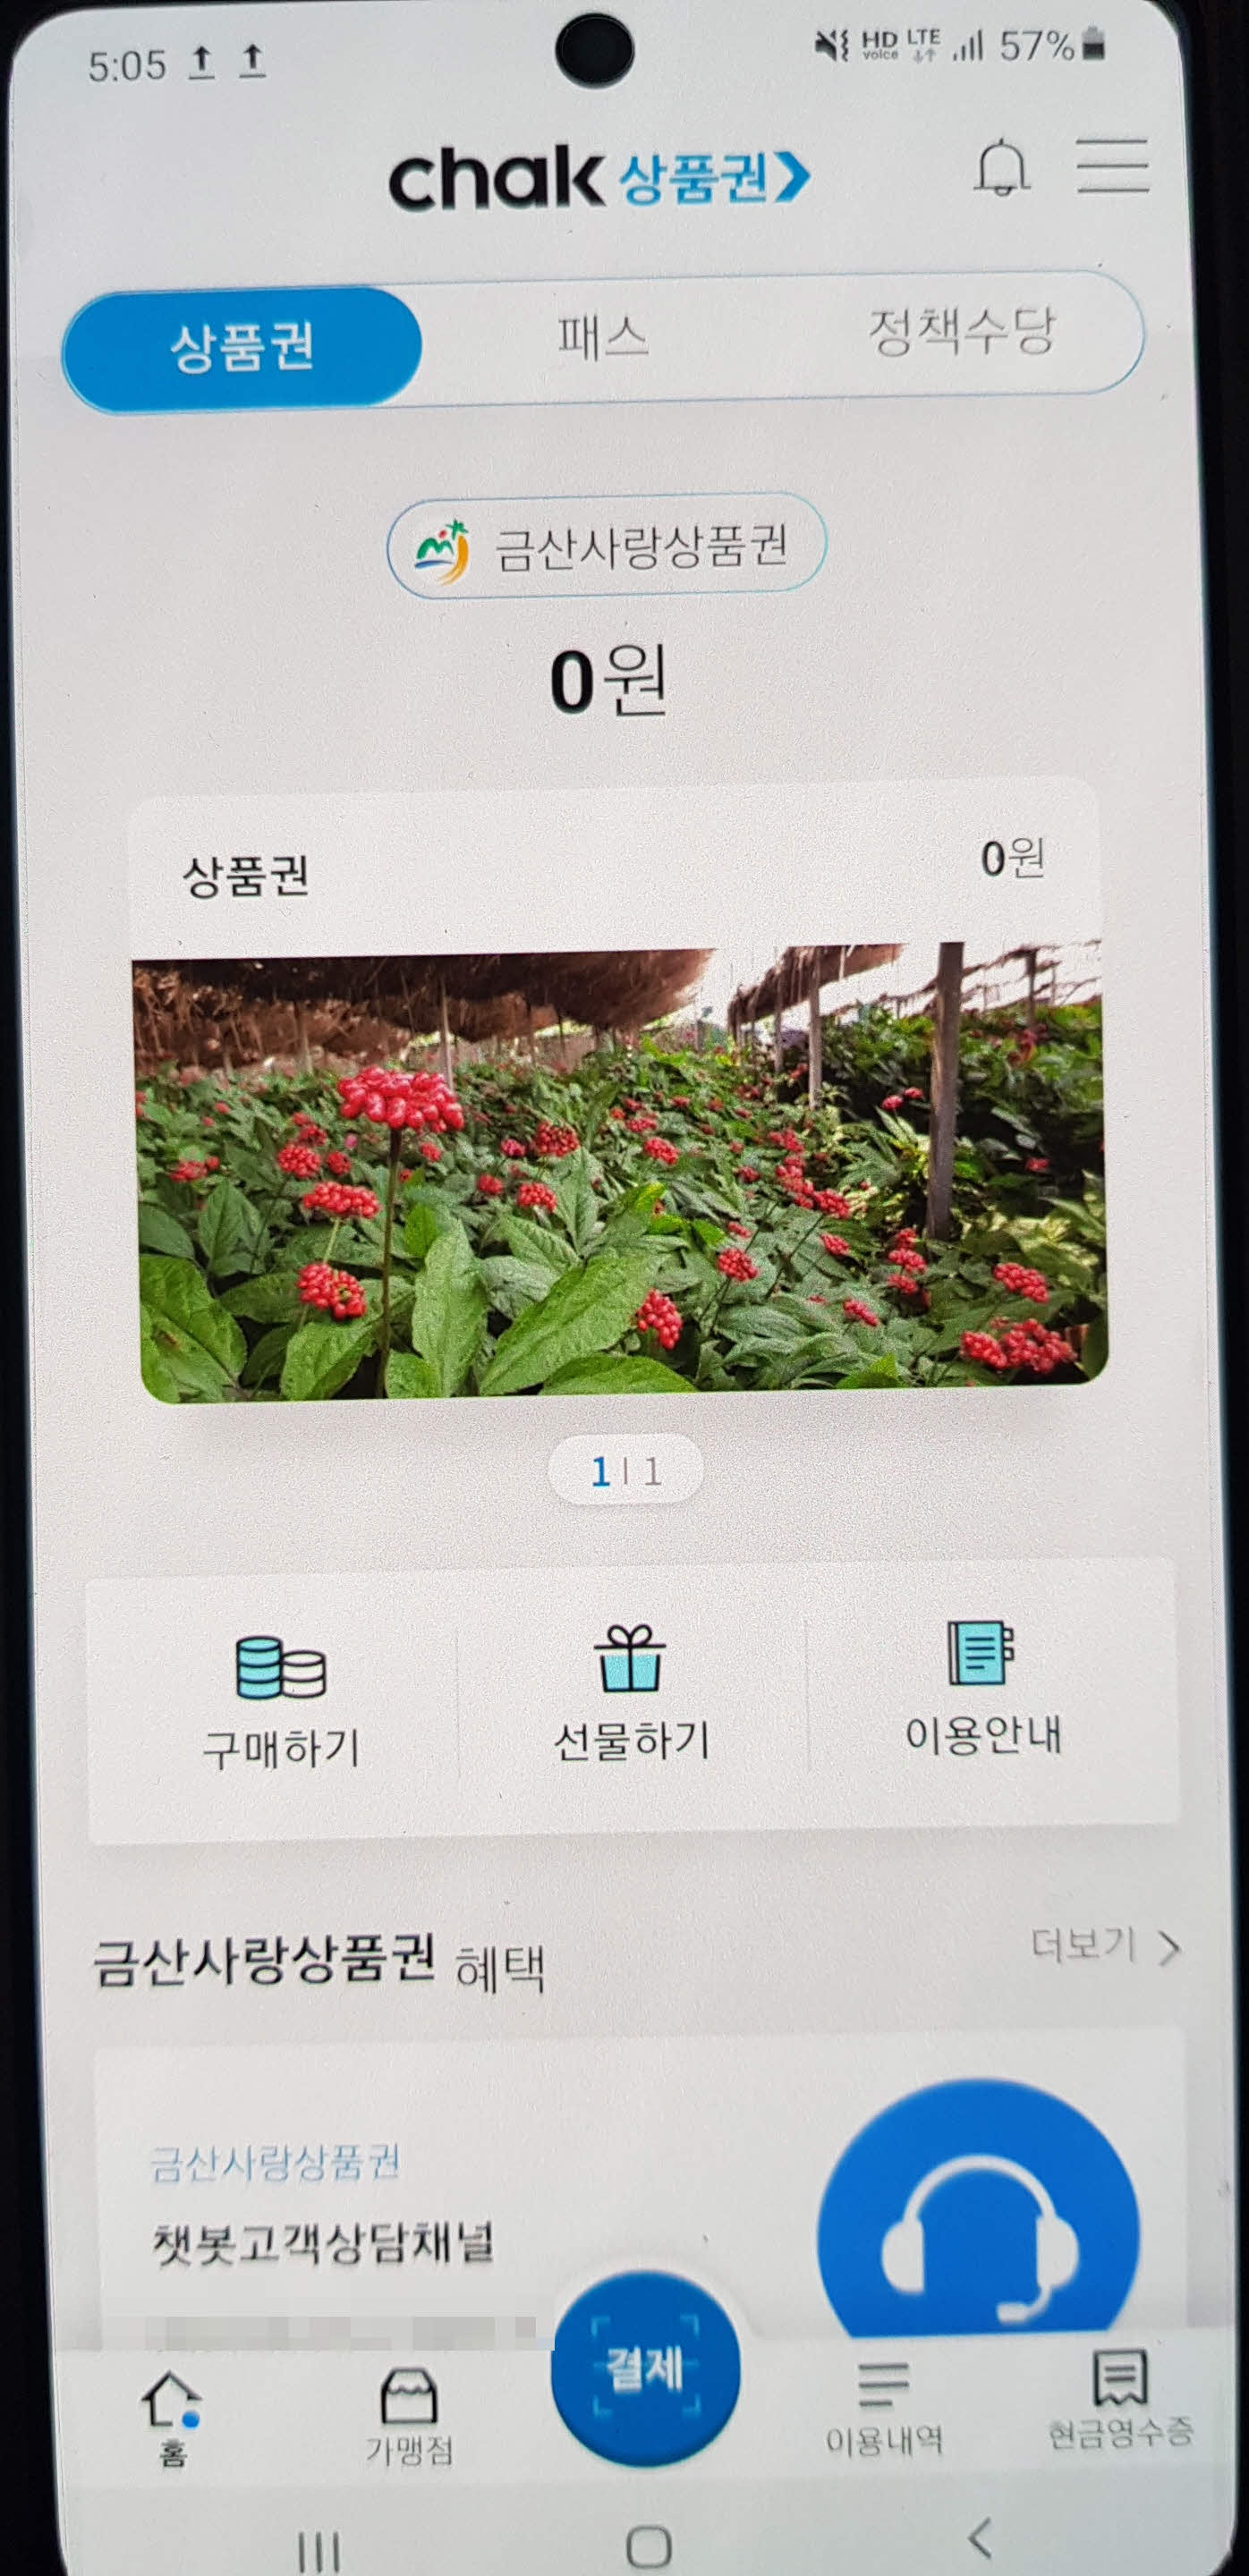 chak 상품권 앱 홈 화면